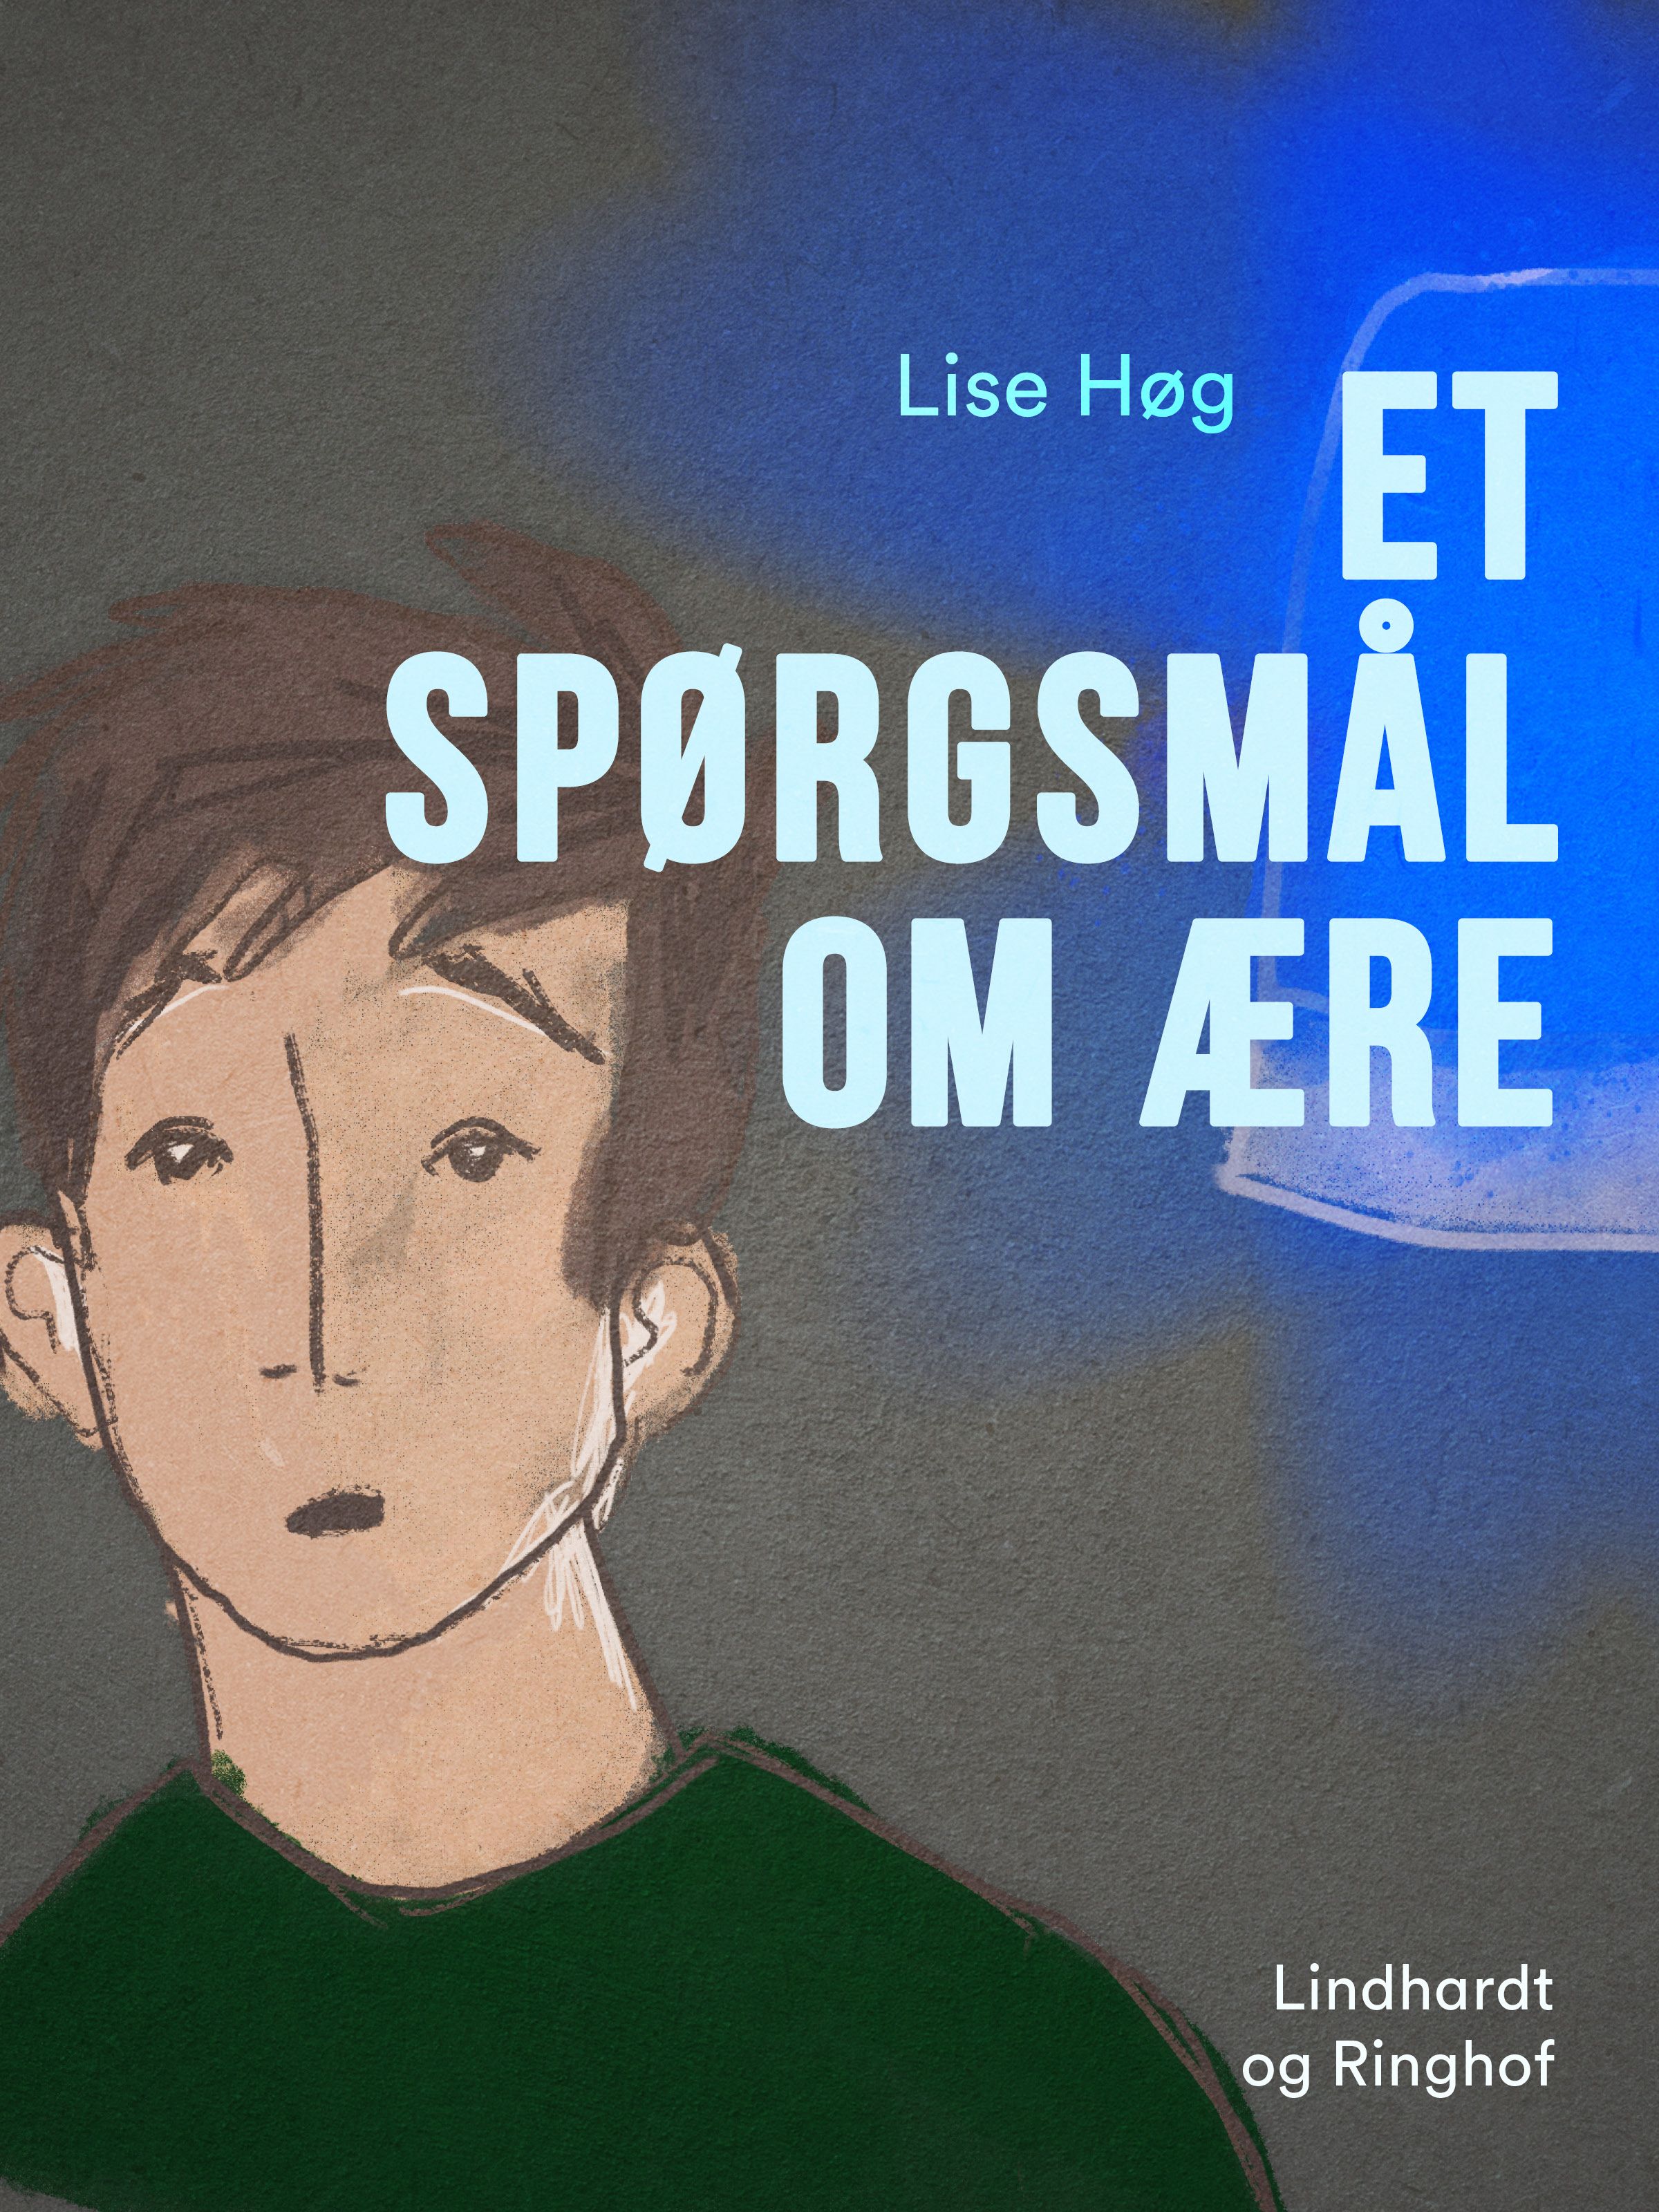 Et spørgsmål om ære, e-bog af Lise Høg